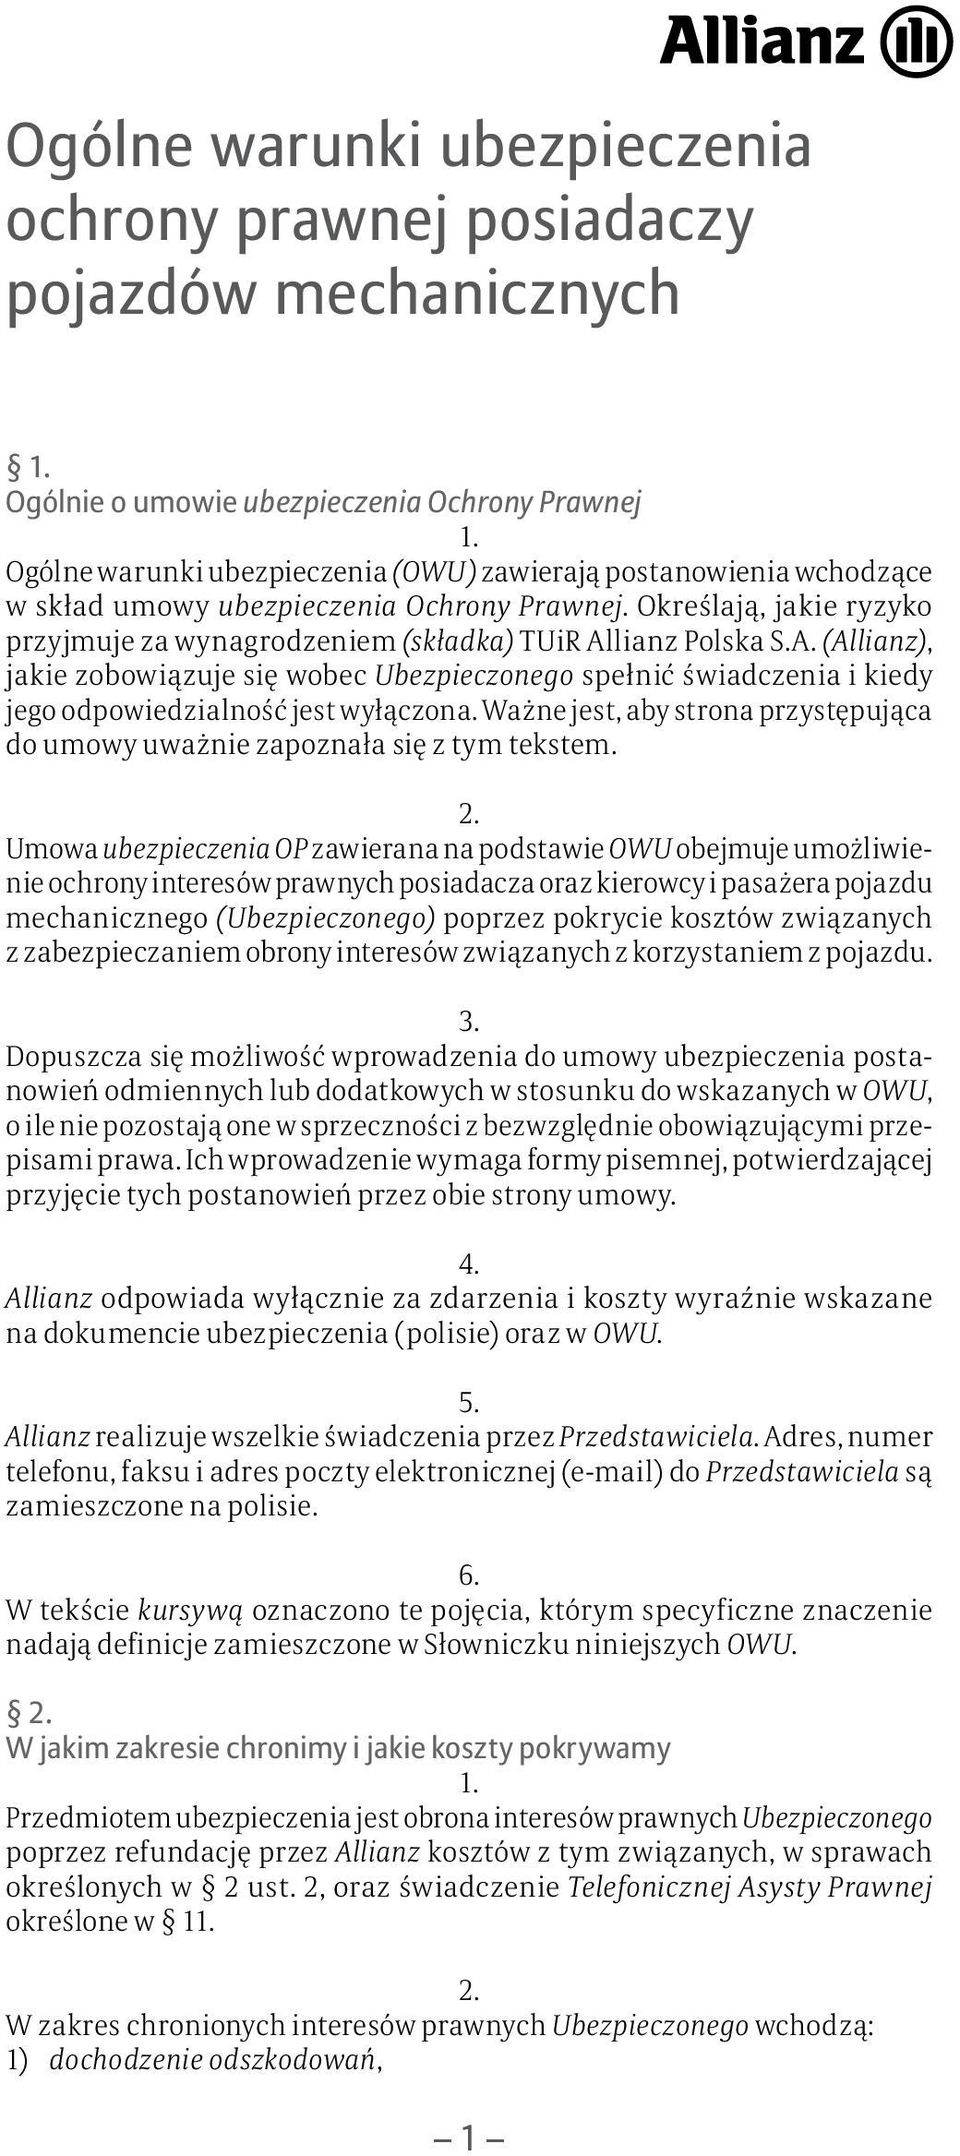 lianz Polska S.A. (Allianz), jakie zobowiązuje się wobec Ubezpieczonego spełnić świadczenia i kiedy jego odpowiedzialność jest wyłączona.